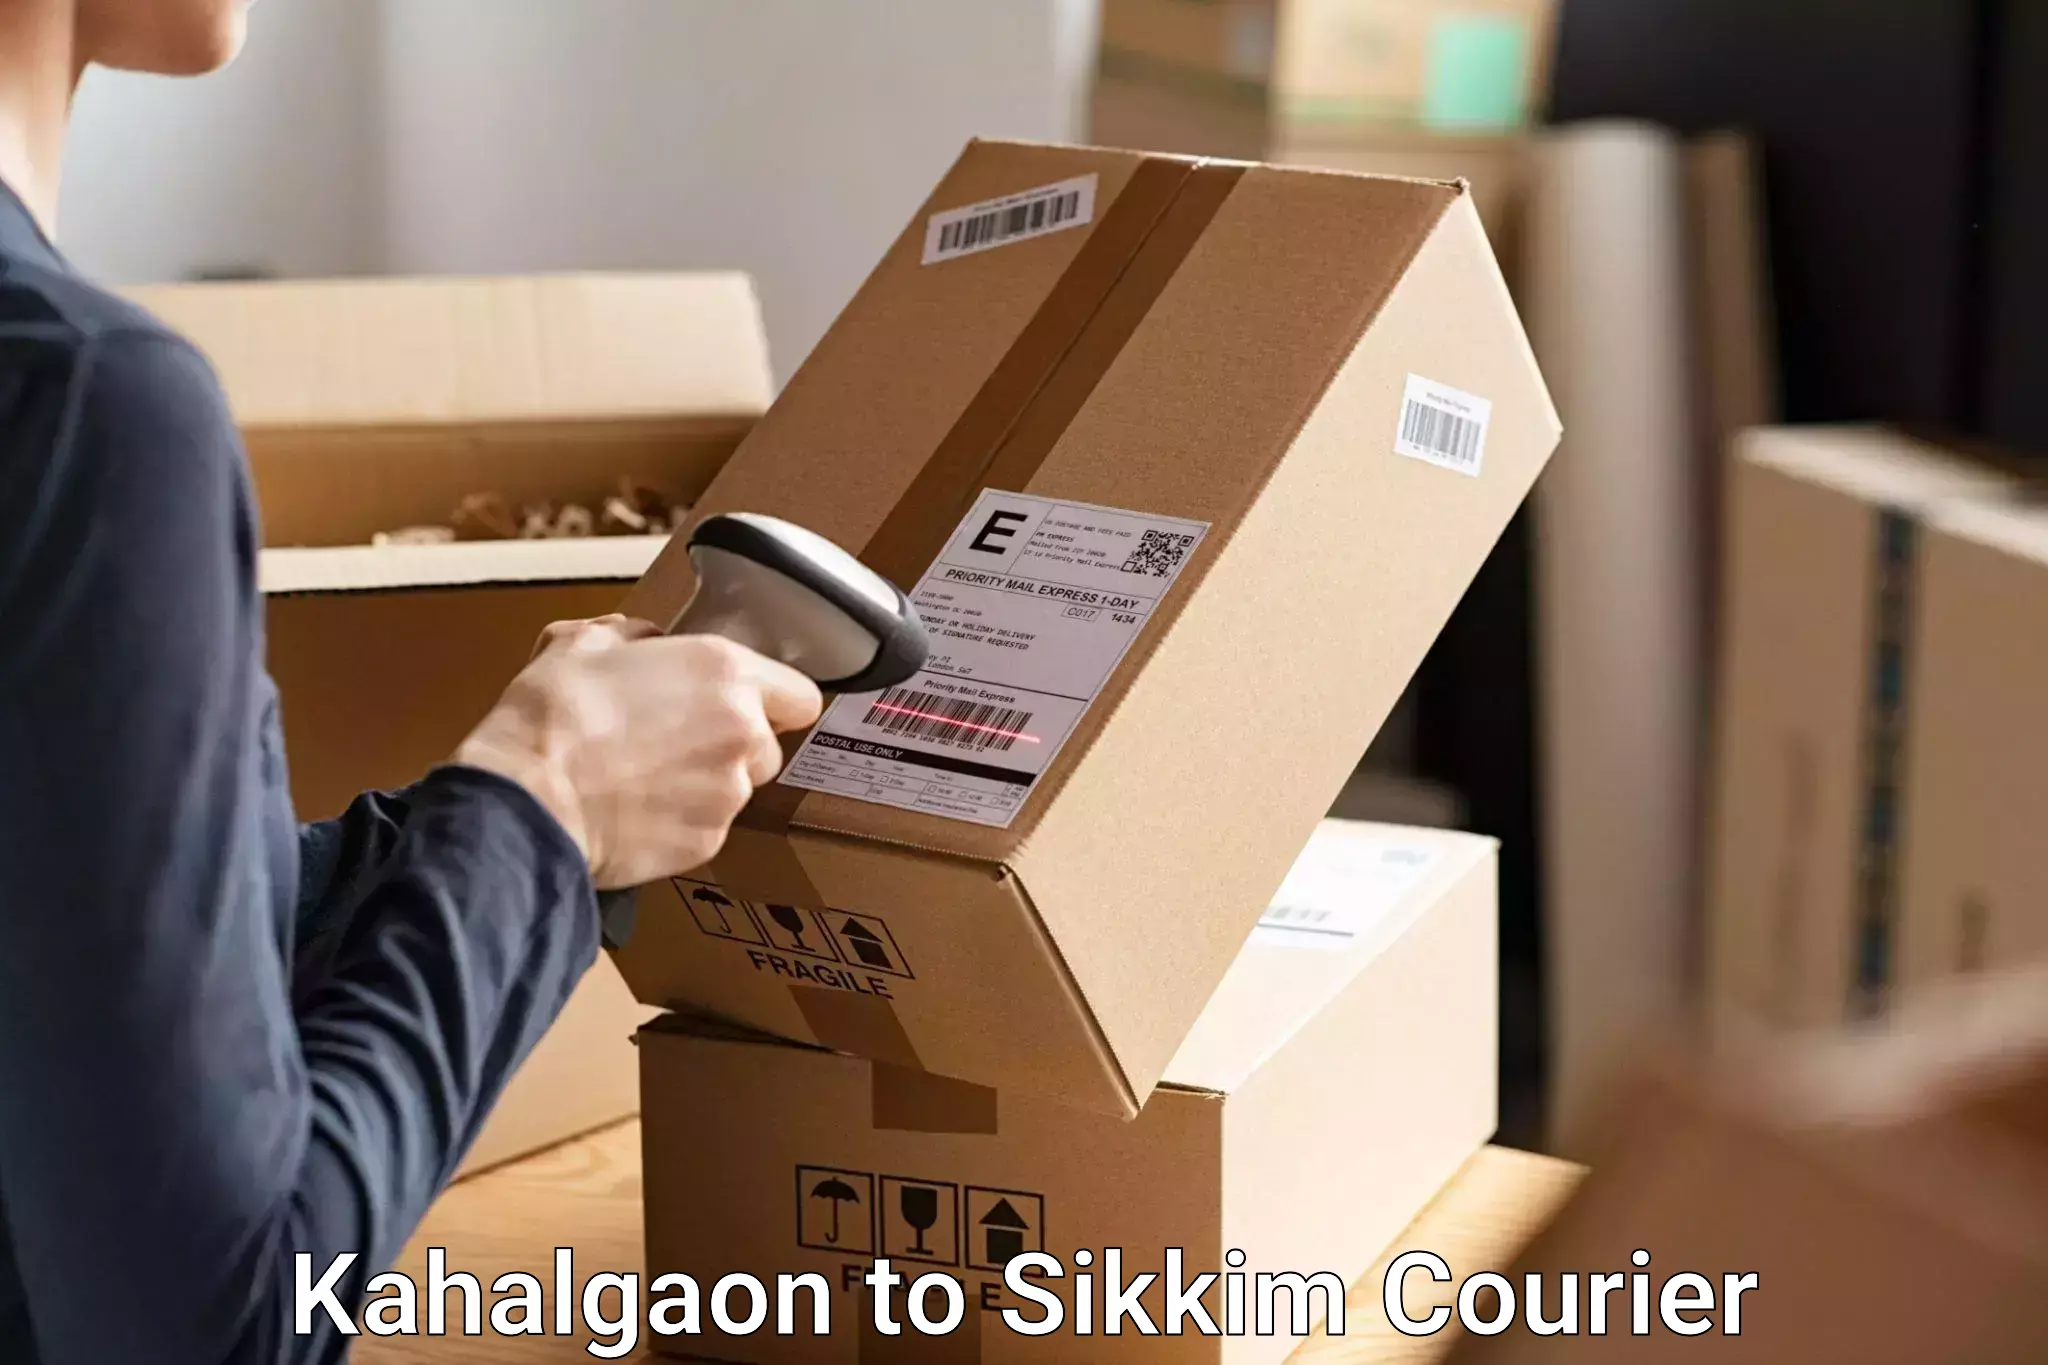 Luggage transport solutions Kahalgaon to Ranipool